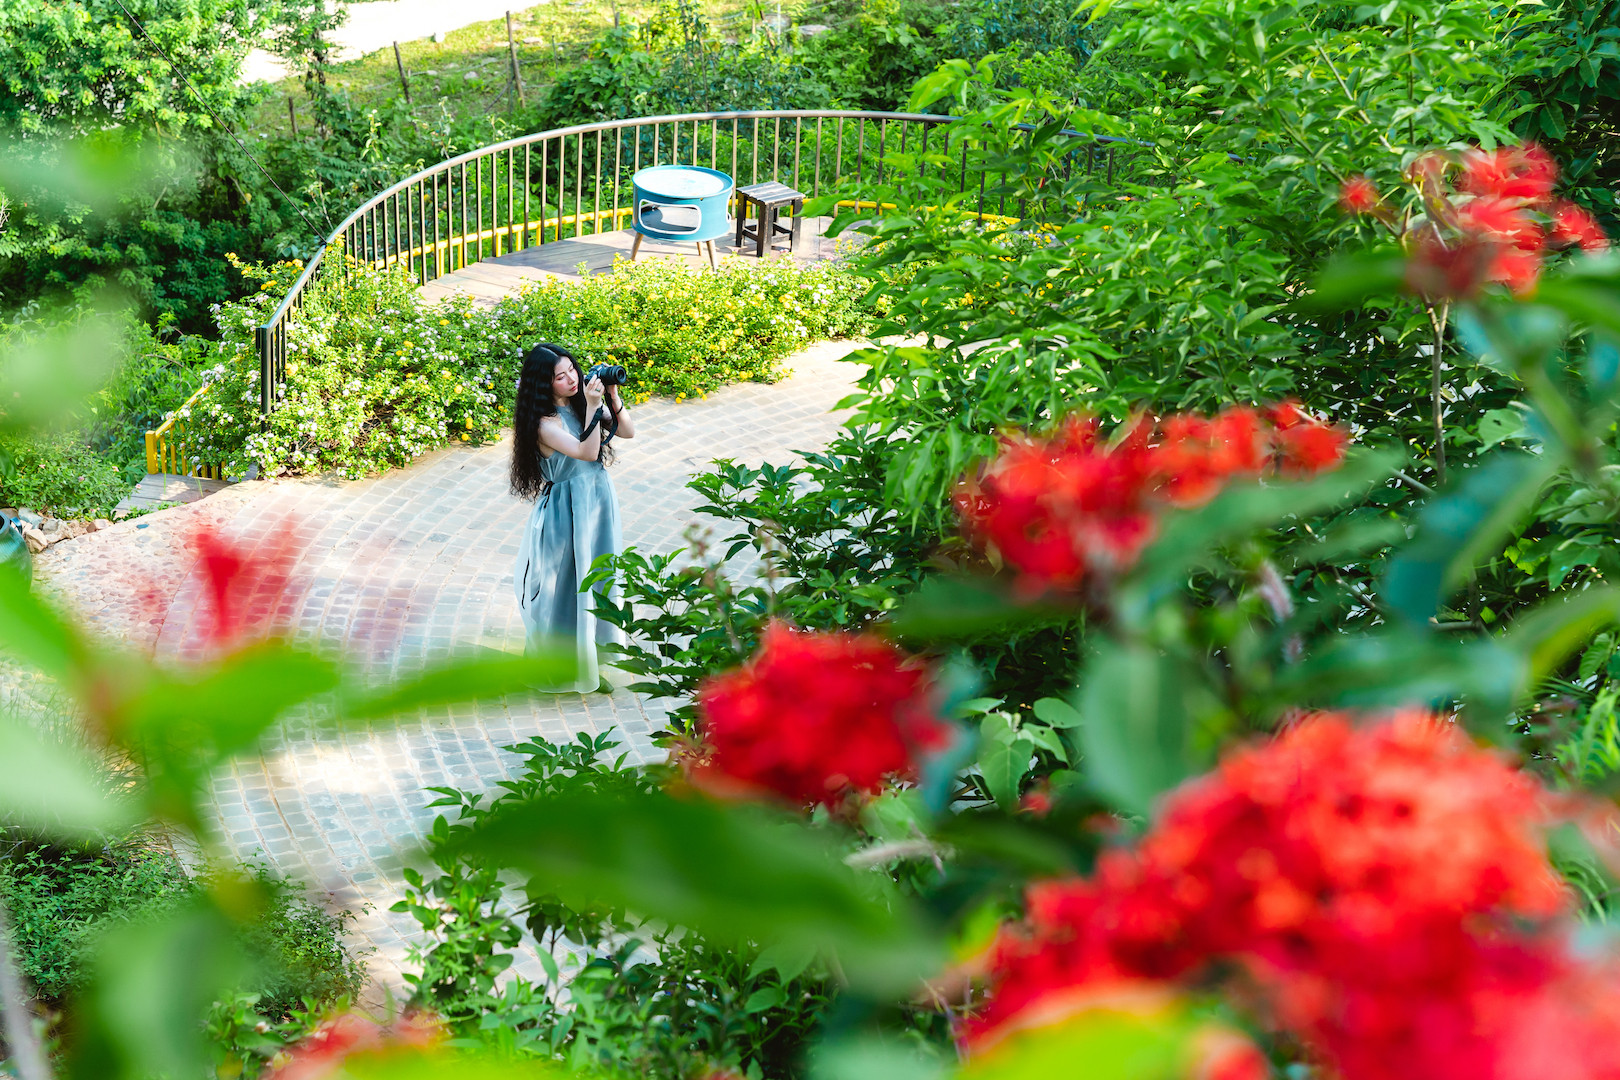 Mê mẩn khu vườn rộng 3.000m2, hoa nở rực rỡ ở ngoại thành Hà Nội